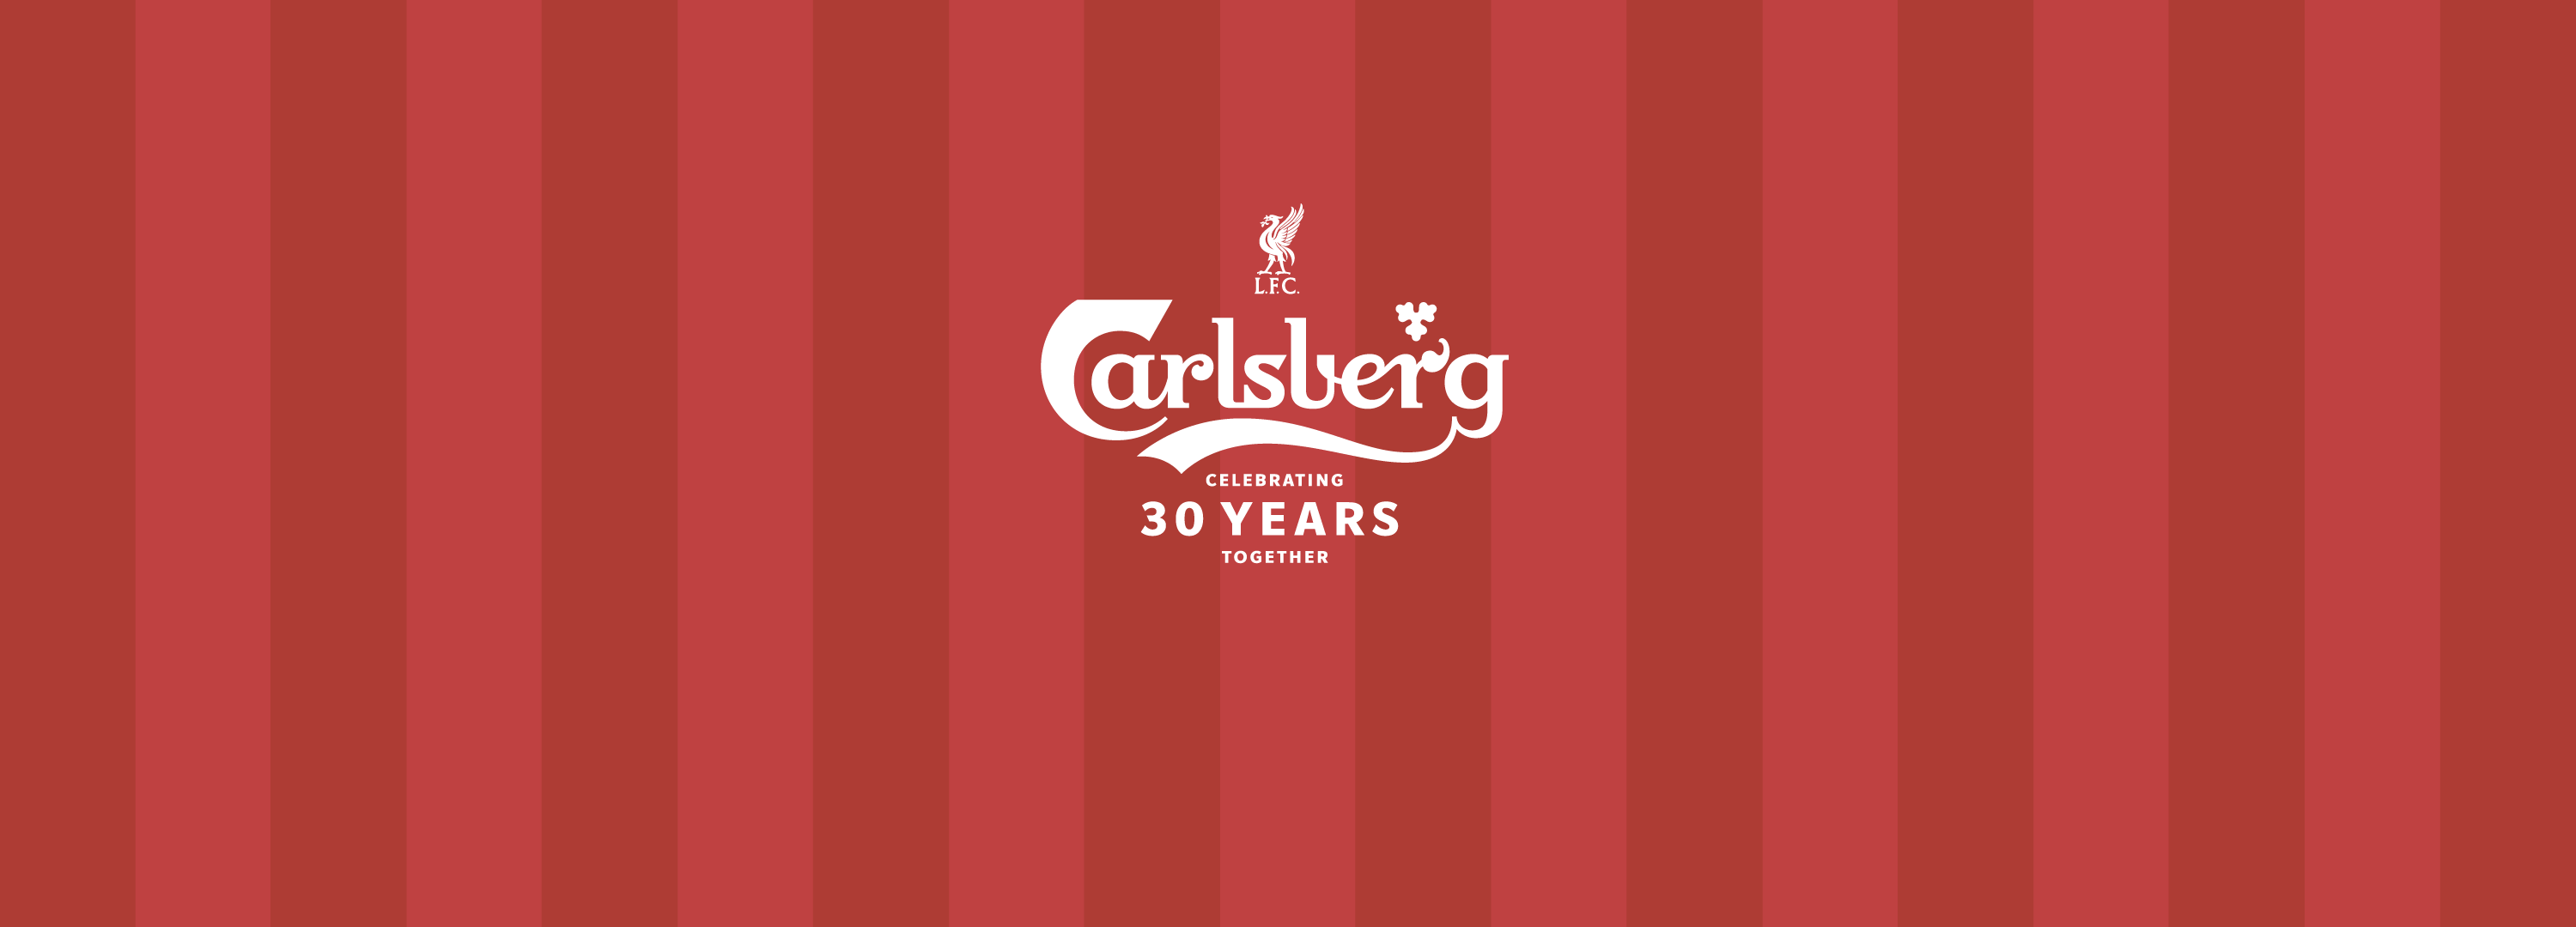 Carlsberg och Liverpool FC firar 30 år